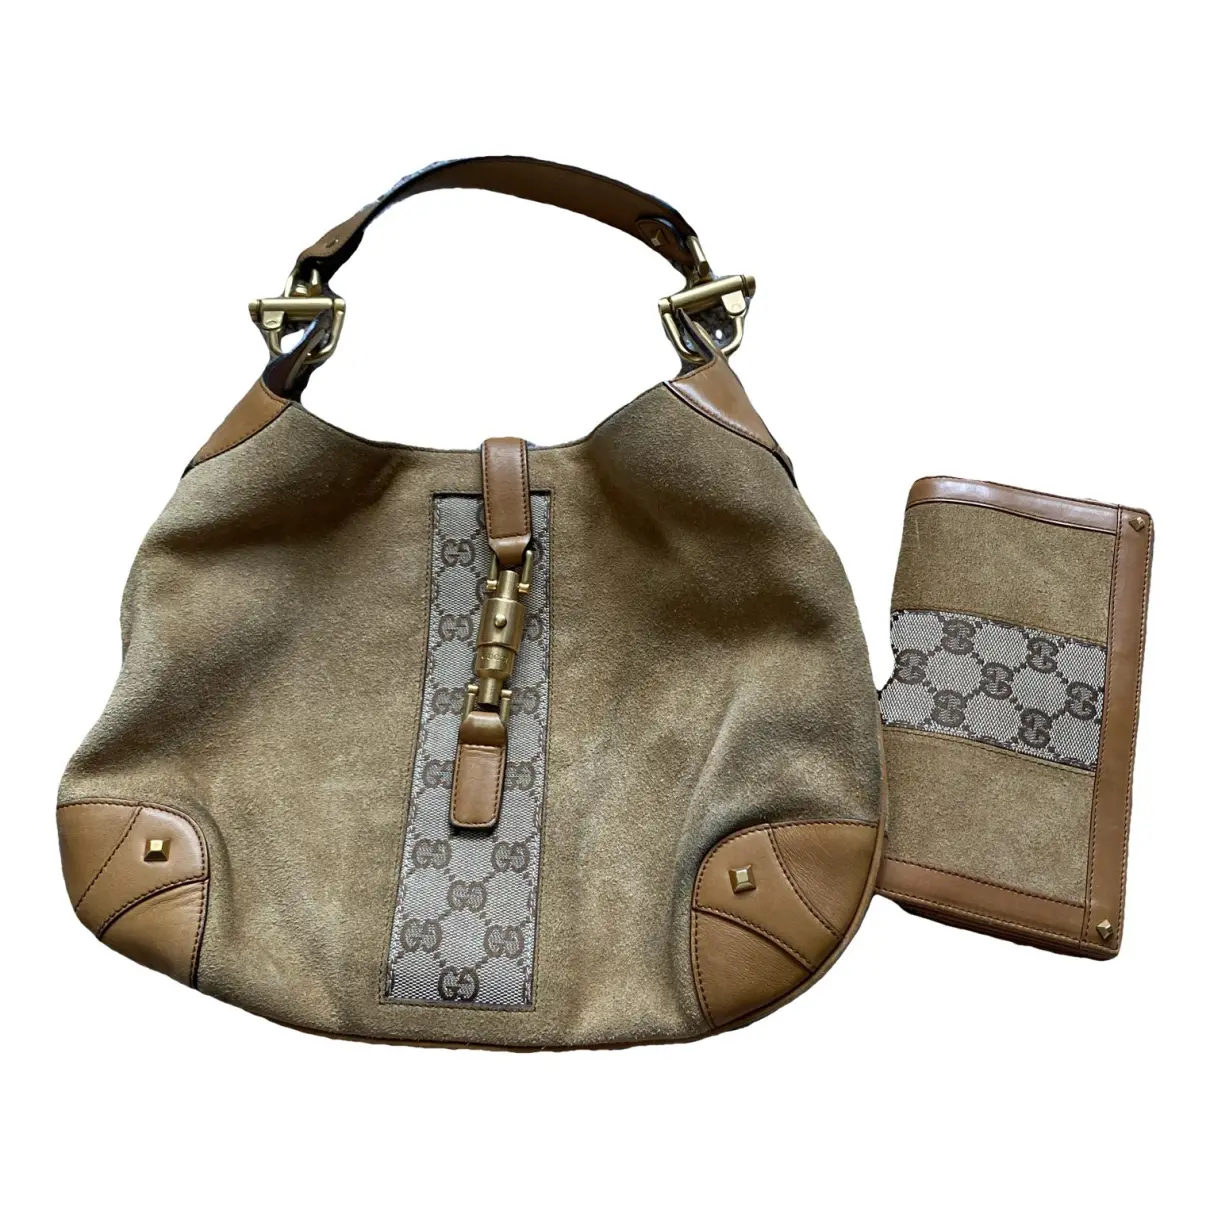 Jackie Vintage cloth handbag